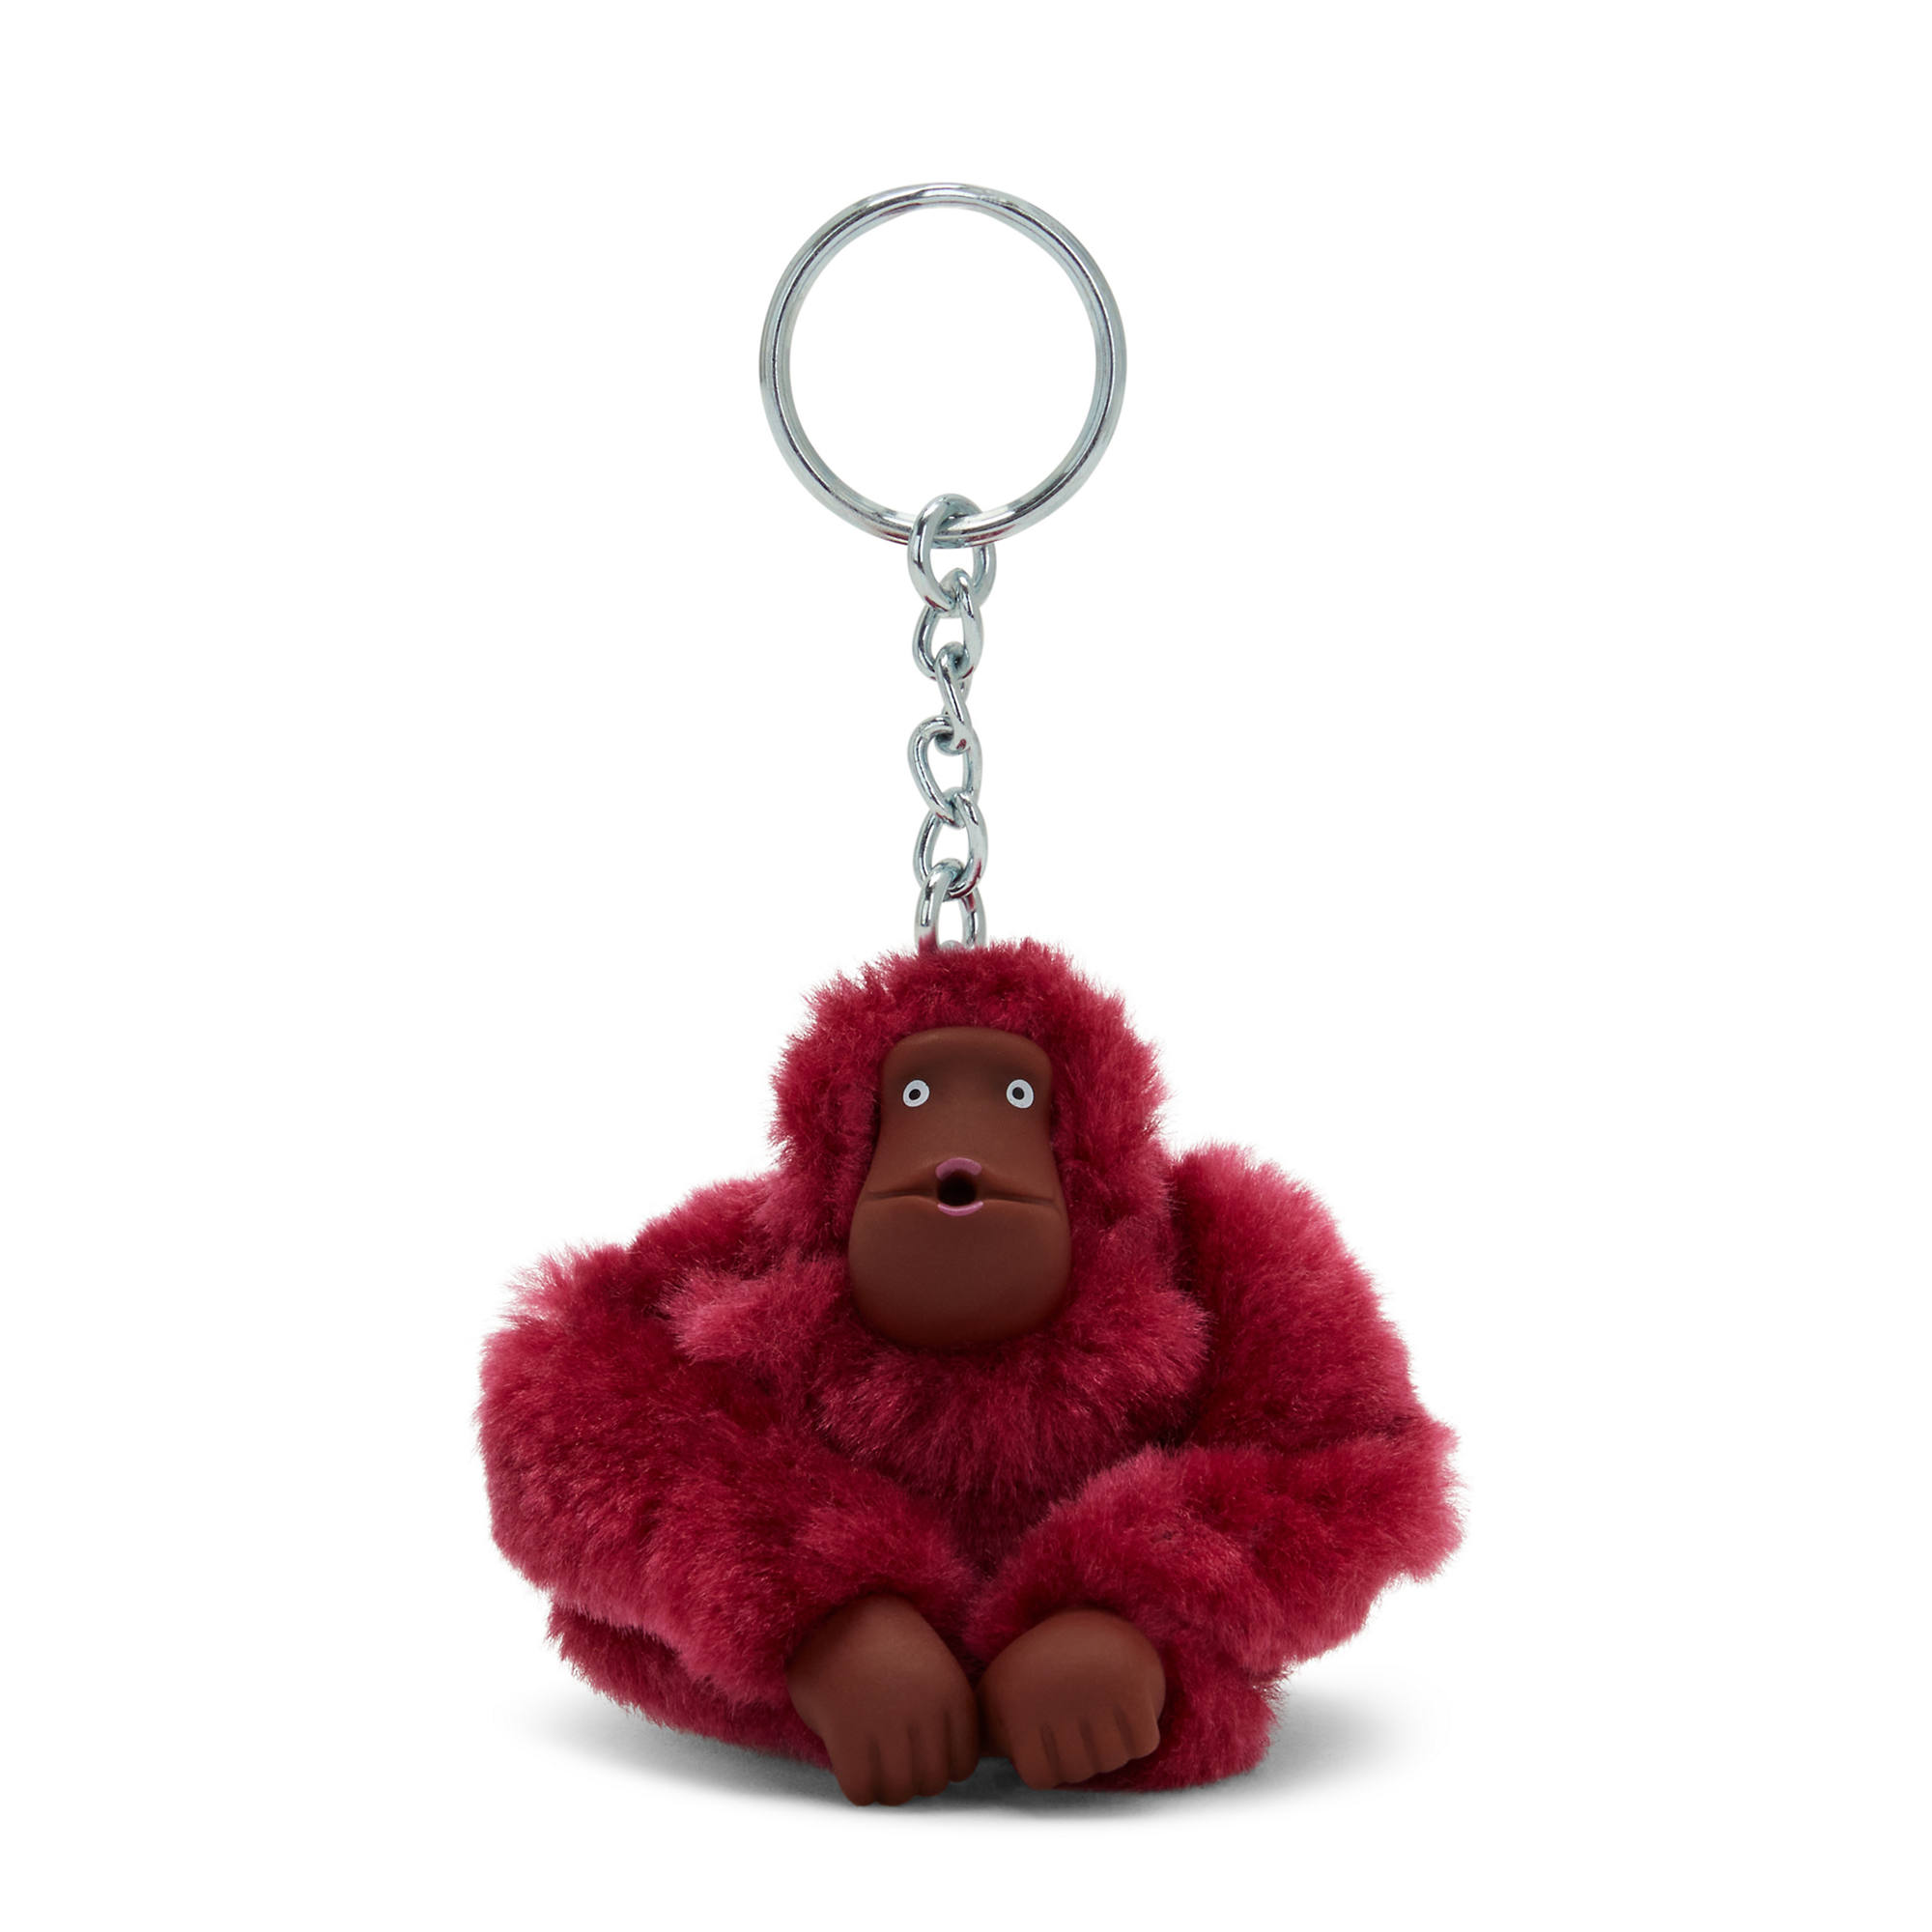 Kipling Sven Small Monkey Keychain | eBay